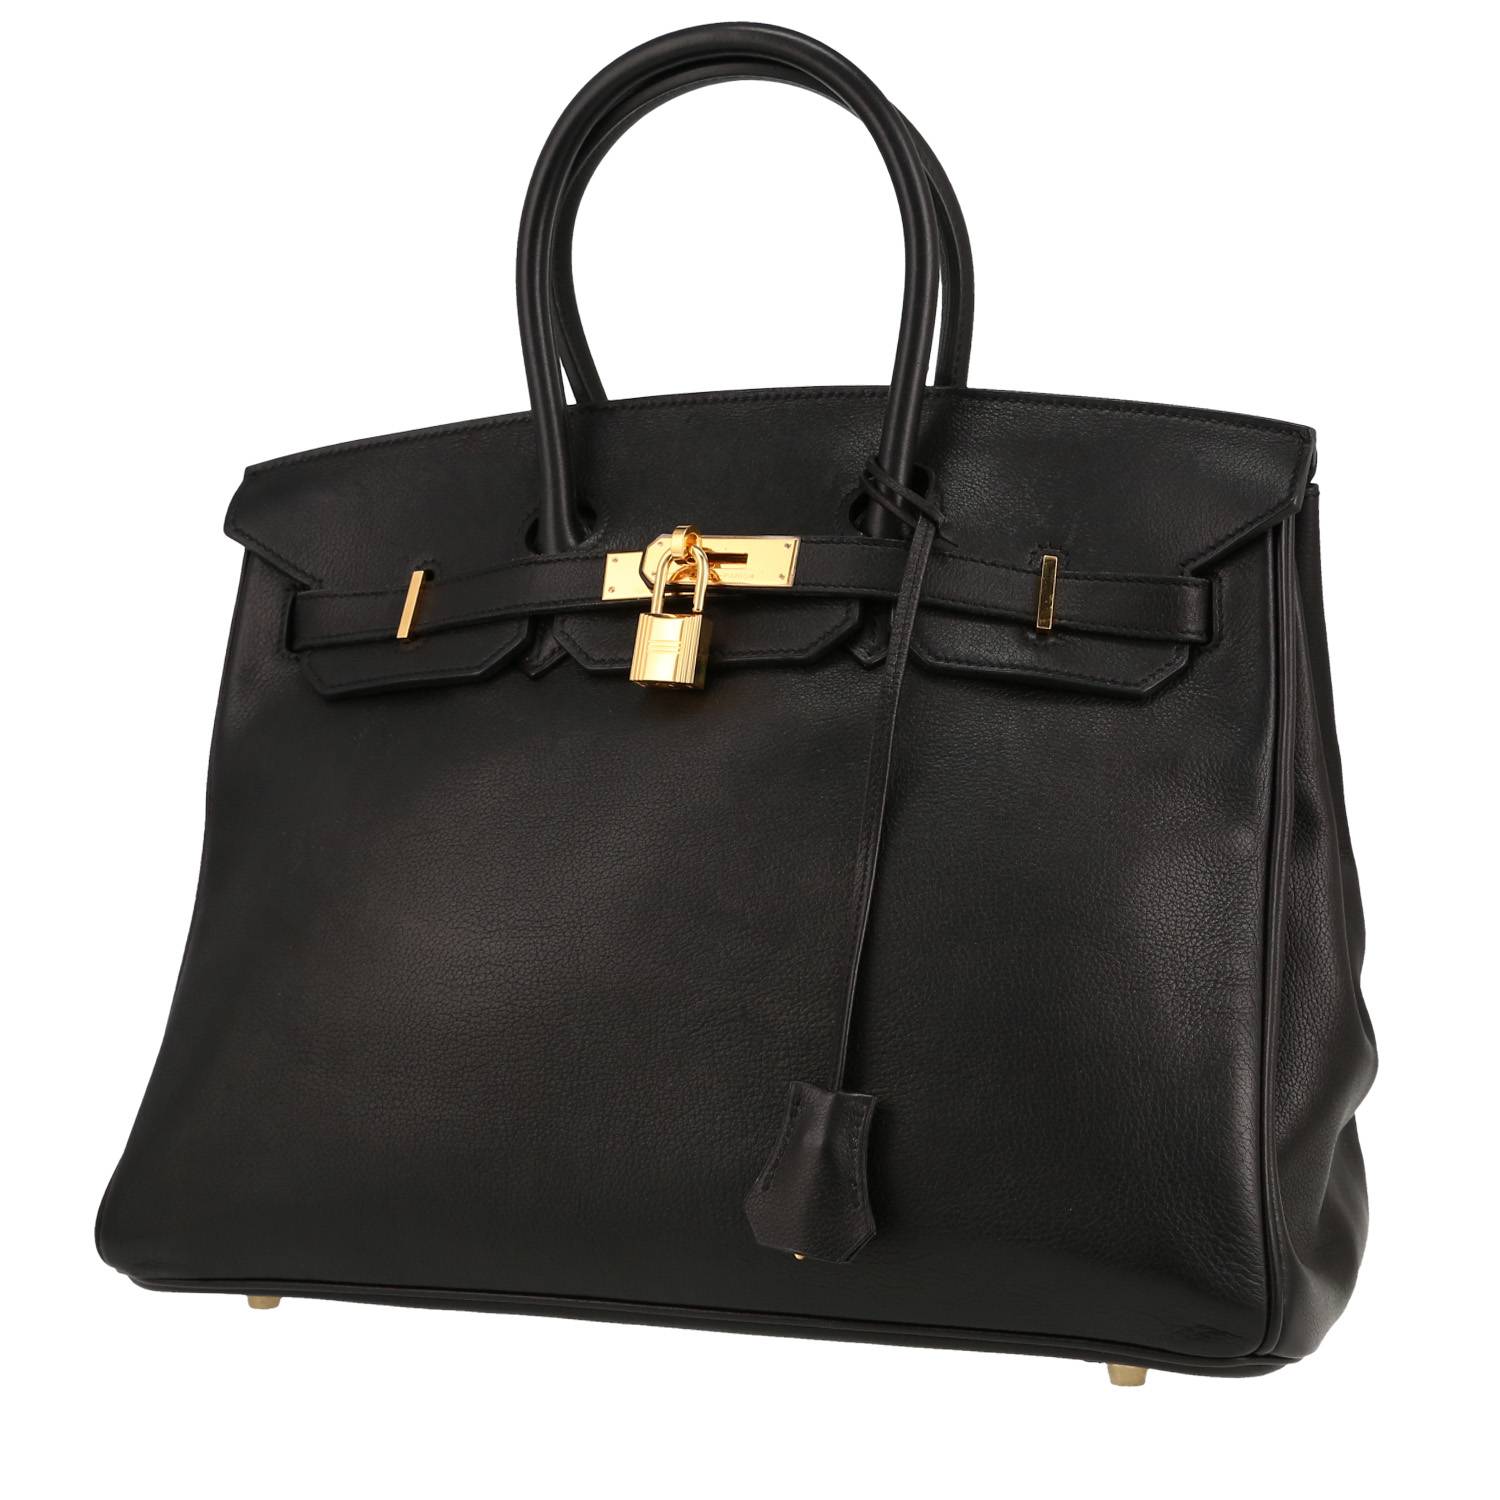 Birkin 35 cm Handbag In Black Evergrain Leather